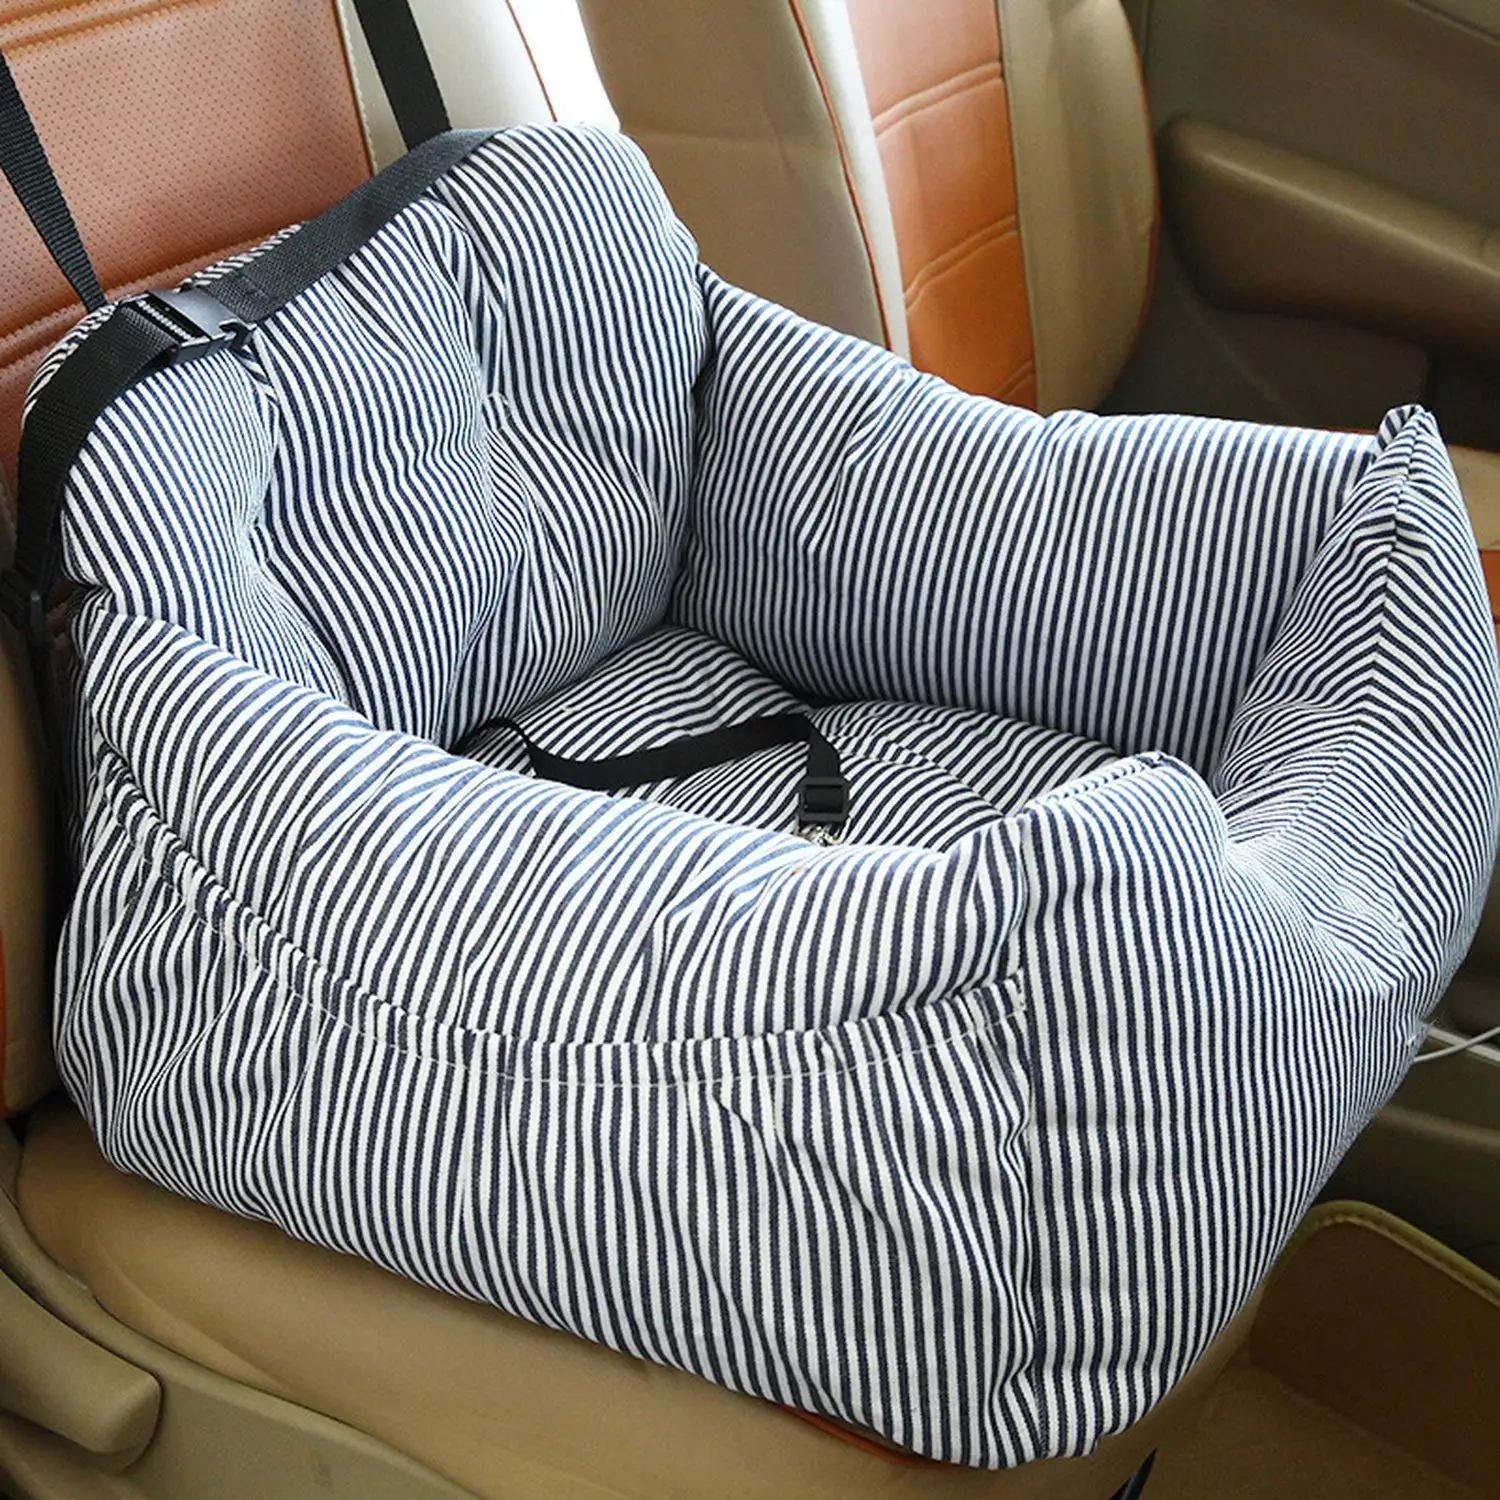 Pet безопасности сиденья удобные дышащие на открытом воздухе путешествия переноска для собак кровать коврик Одеяло Pet Автокресло сумка